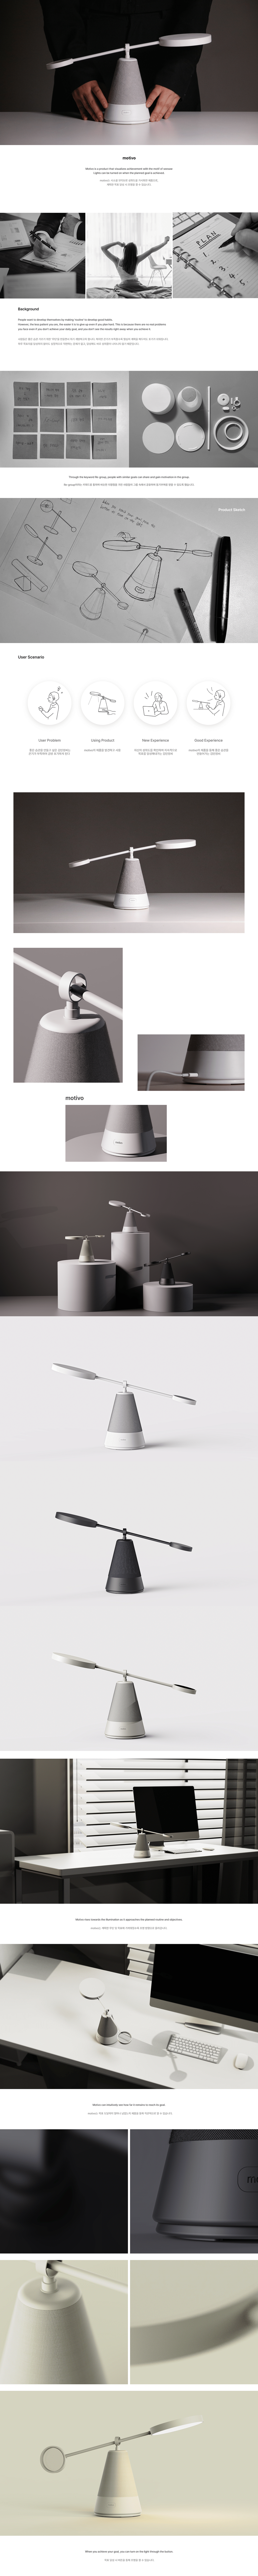 3D design industrial design  modeling product product design  furniture furniture design  Render light